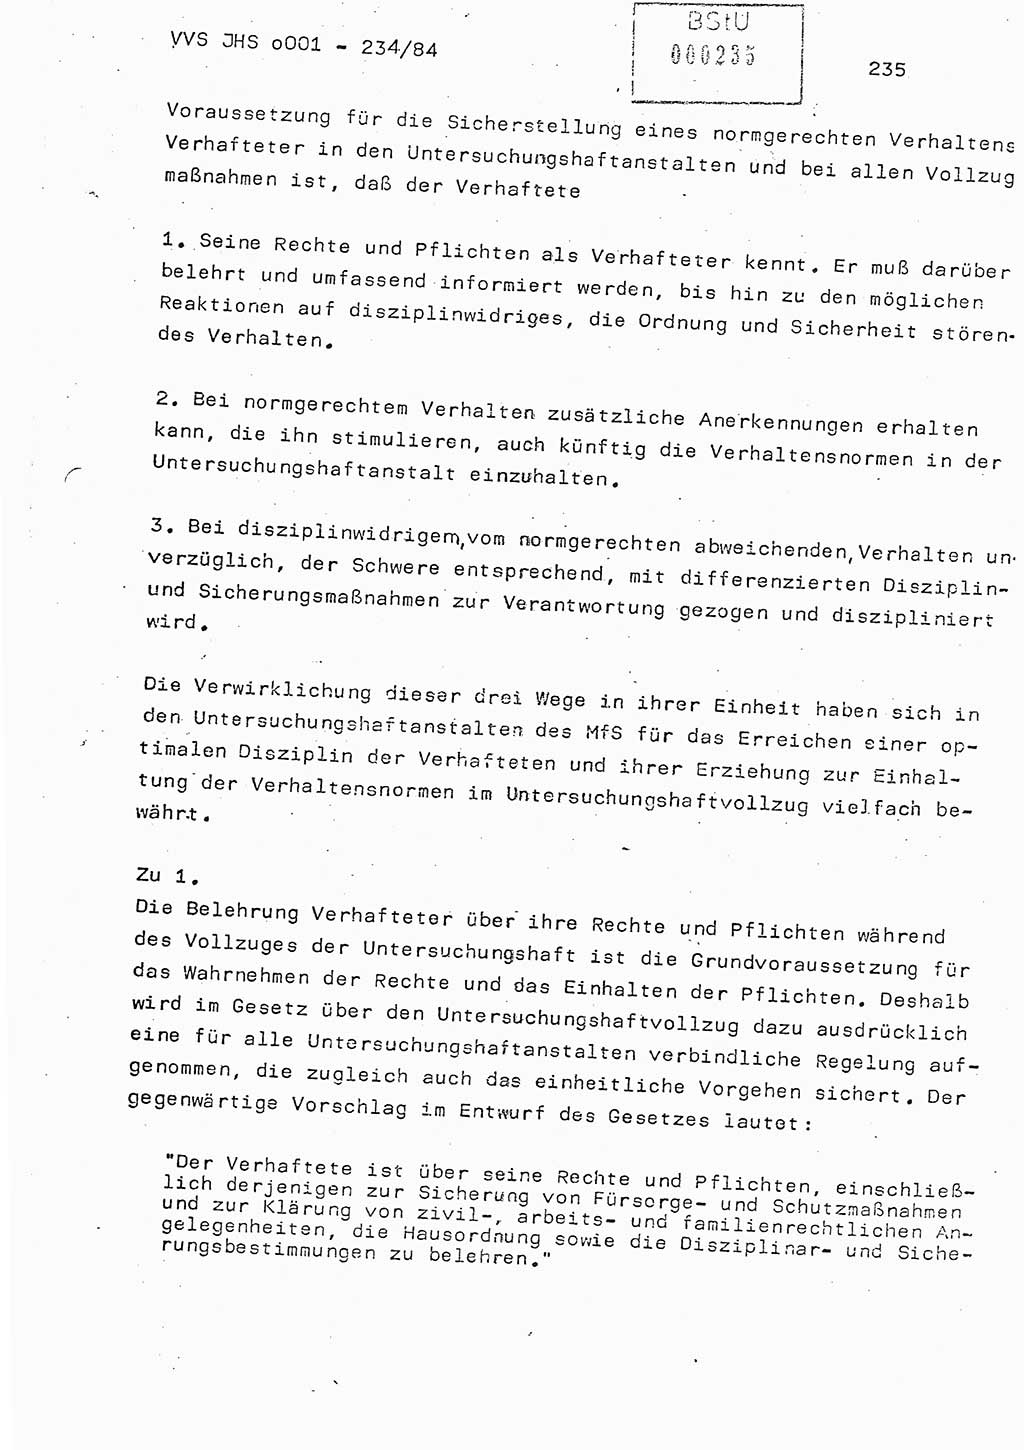 Dissertation Oberst Siegfried Rataizick (Abt. ⅩⅣ), Oberstleutnant Volkmar Heinz (Abt. ⅩⅣ), Oberstleutnant Werner Stein (HA Ⅸ), Hauptmann Heinz Conrad (JHS), Ministerium für Staatssicherheit (MfS) [Deutsche Demokratische Republik (DDR)], Juristische Hochschule (JHS), Vertrauliche Verschlußsache (VVS) o001-234/84, Potsdam 1984, Seite 235 (Diss. MfS DDR JHS VVS o001-234/84 1984, S. 235)